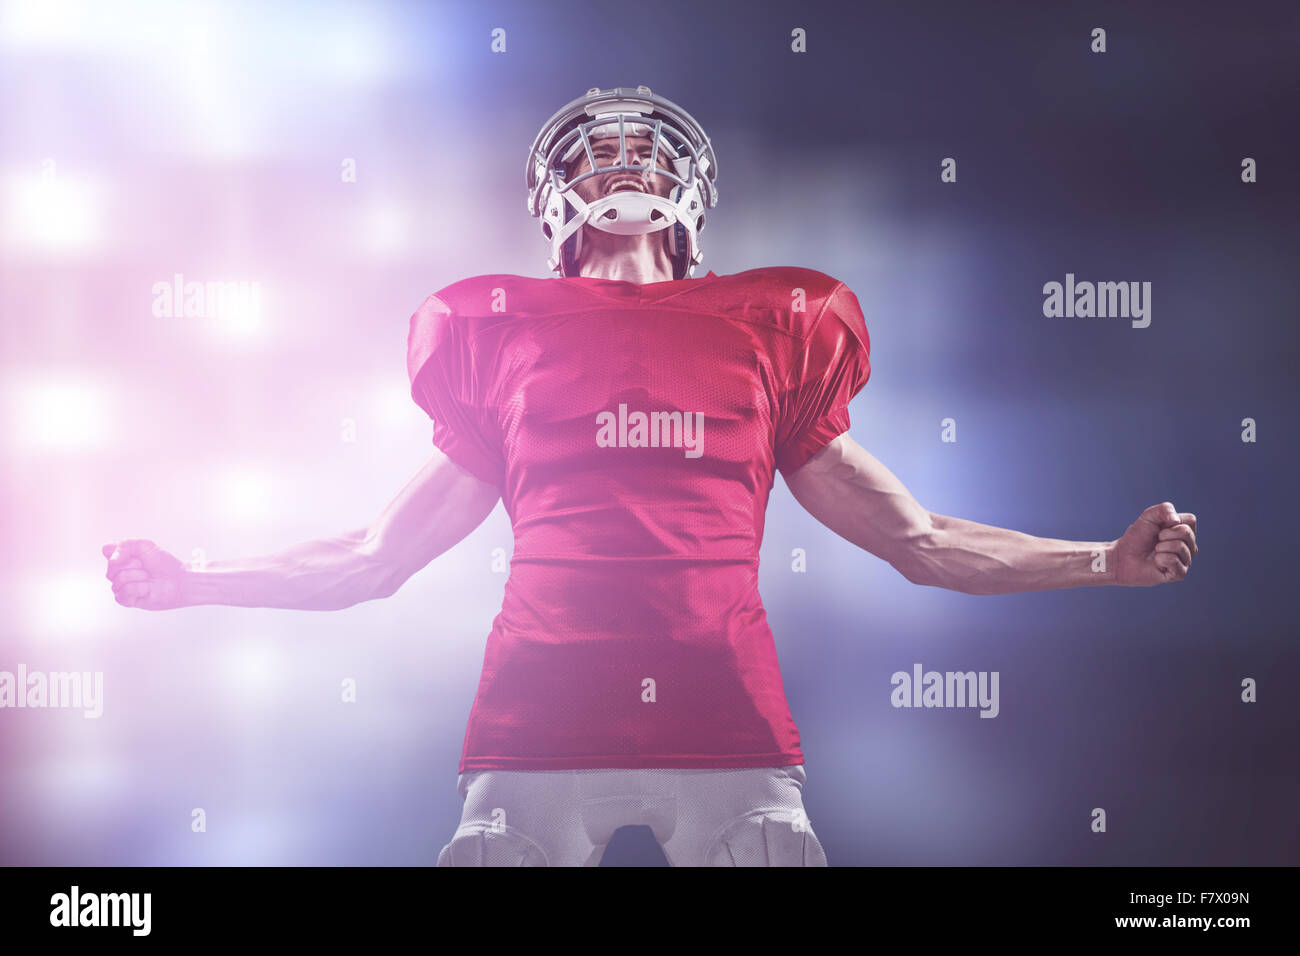 Immagine composita di aggressivo giocatore di football americano in maglia rossa urlando Foto Stock